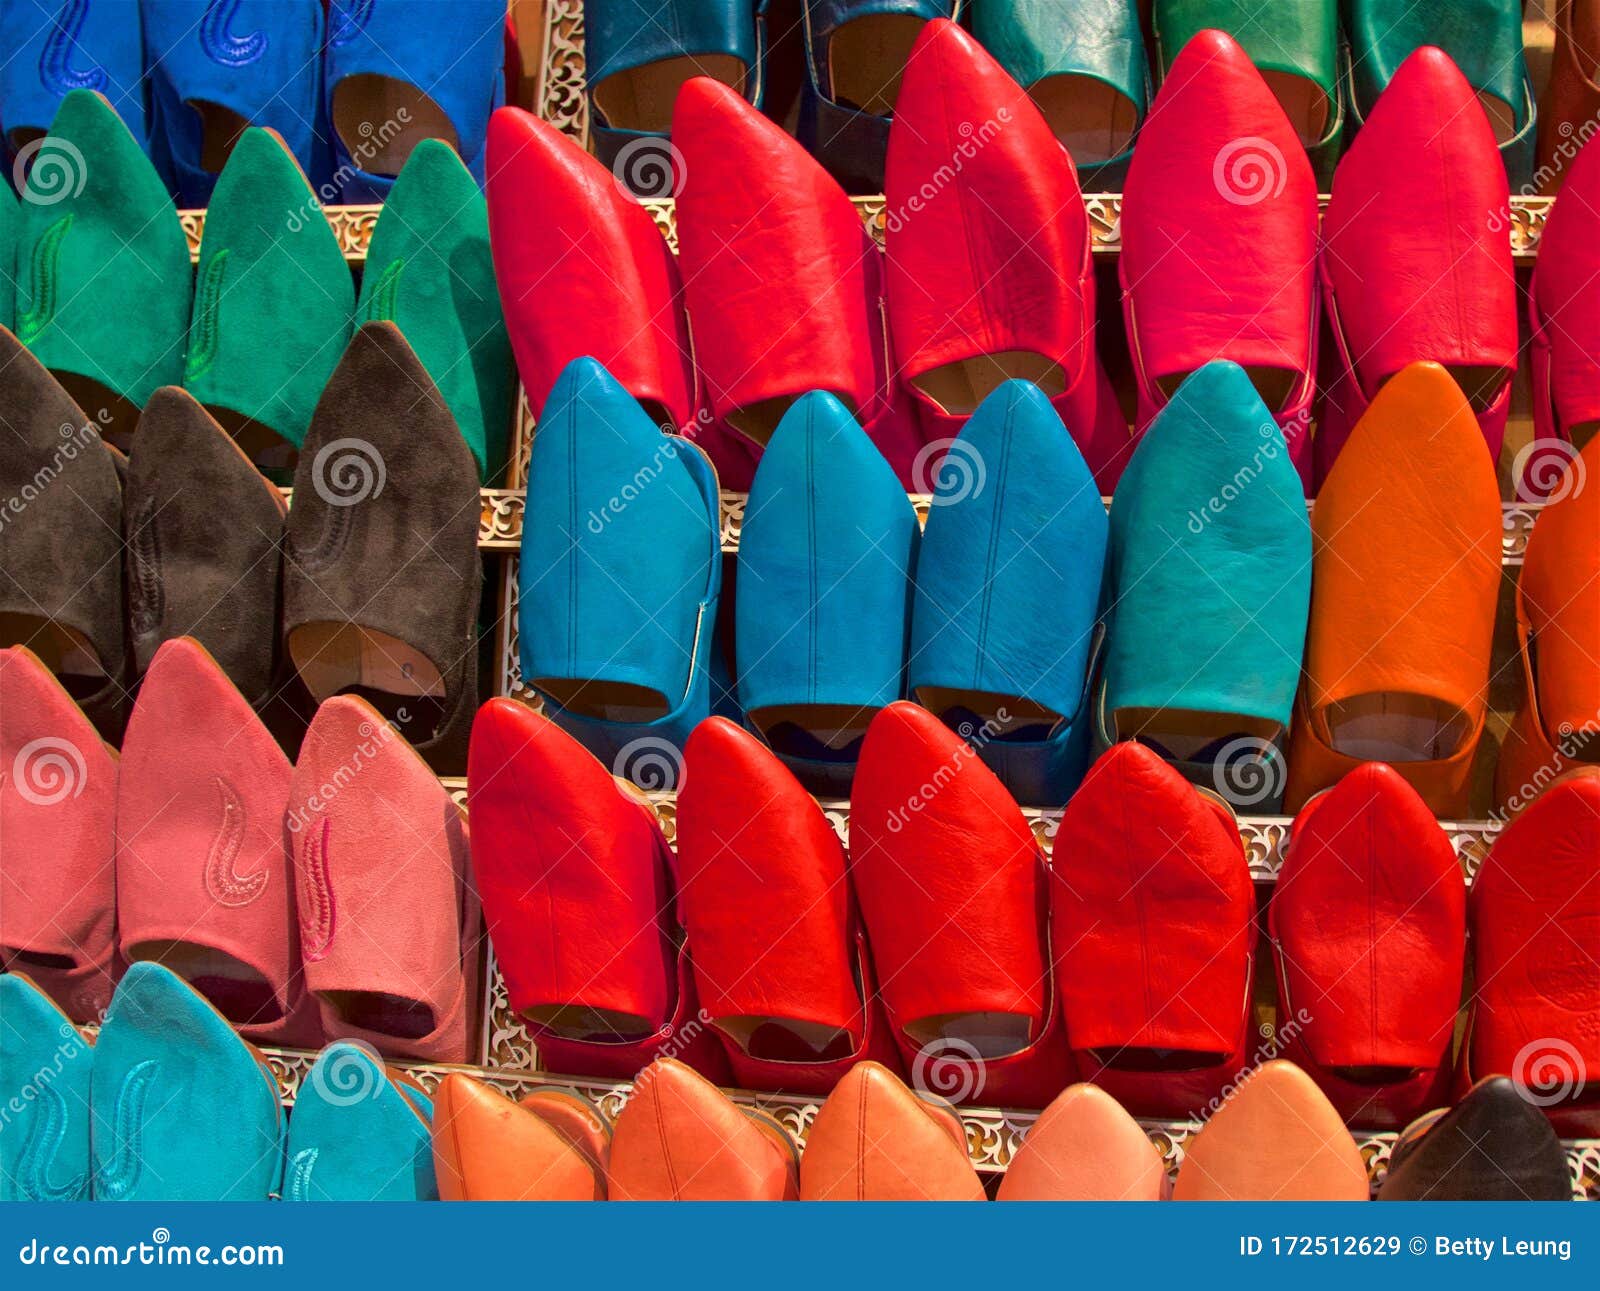 Moroccan Slippers Stock Image | CartoonDealer.com #25671499